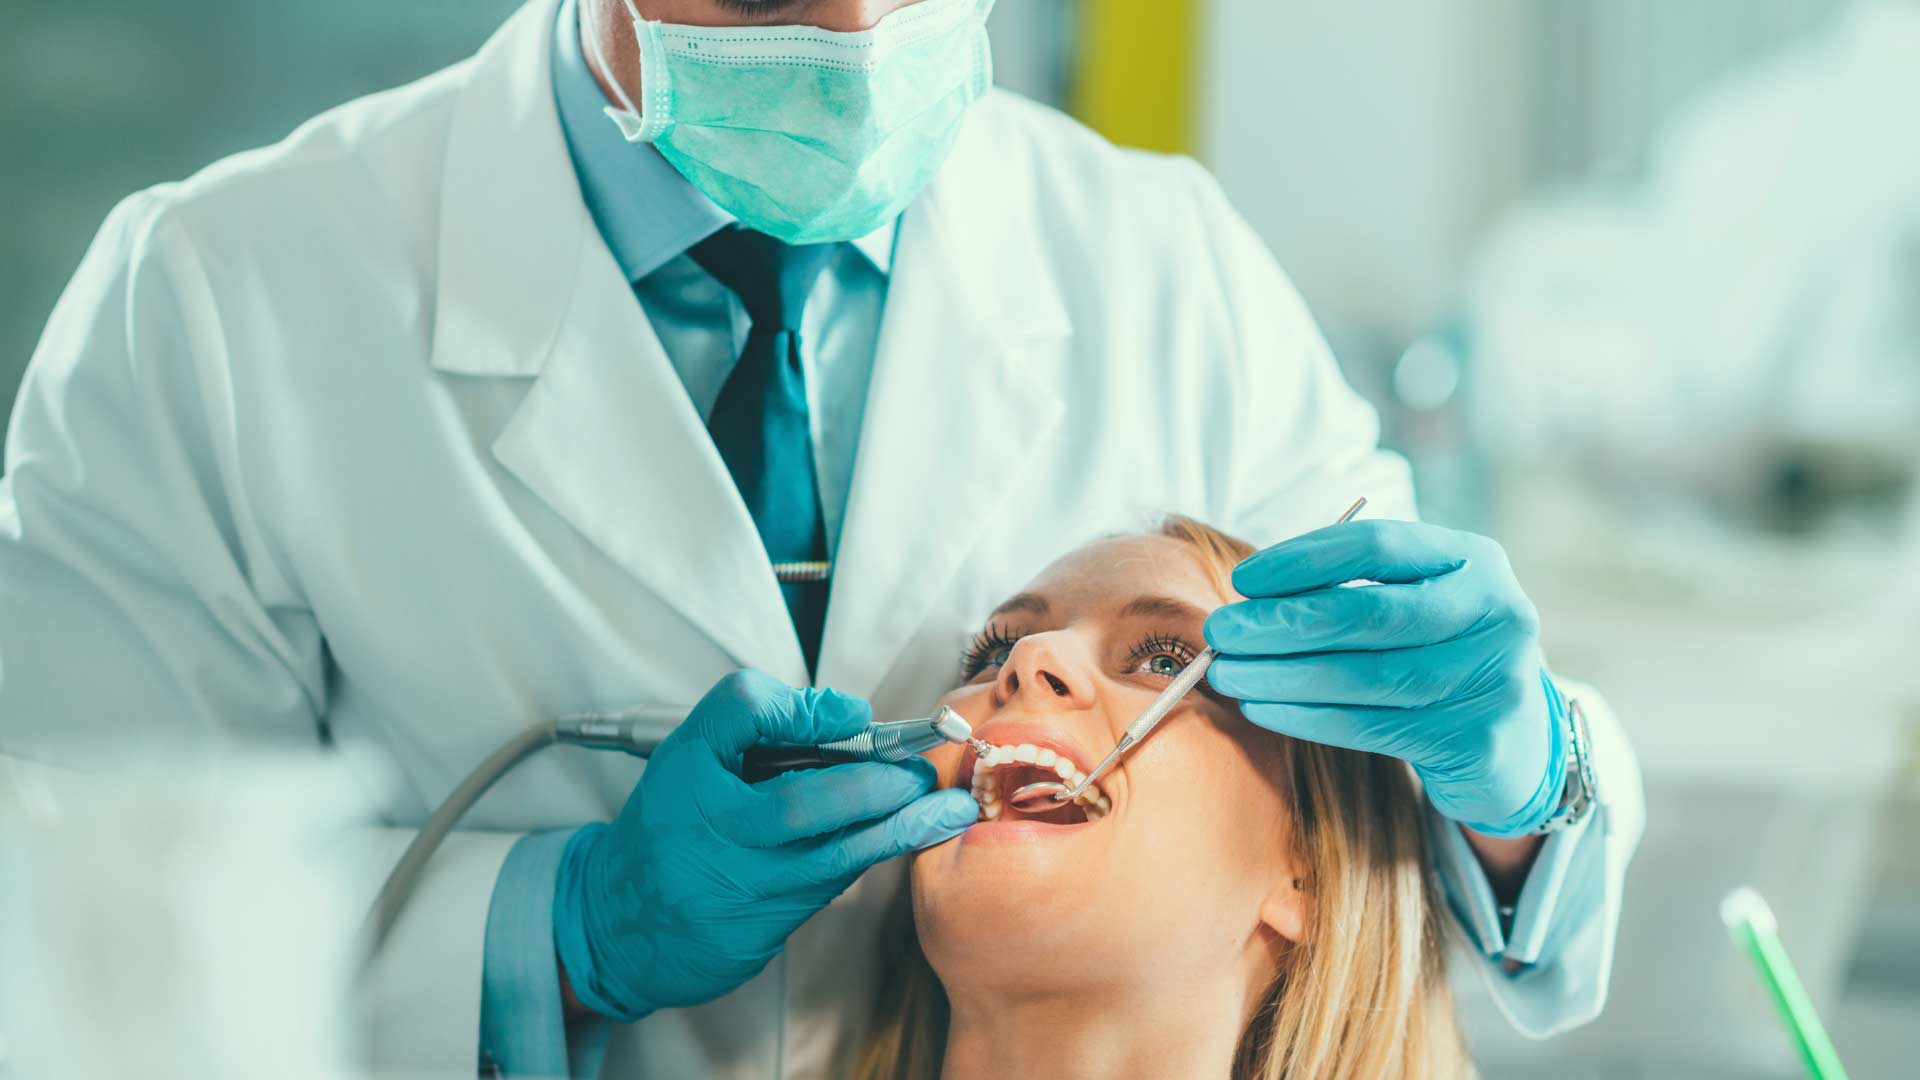 Odontoiatria Conservativa presso Clinica Sabatelli a Fasano